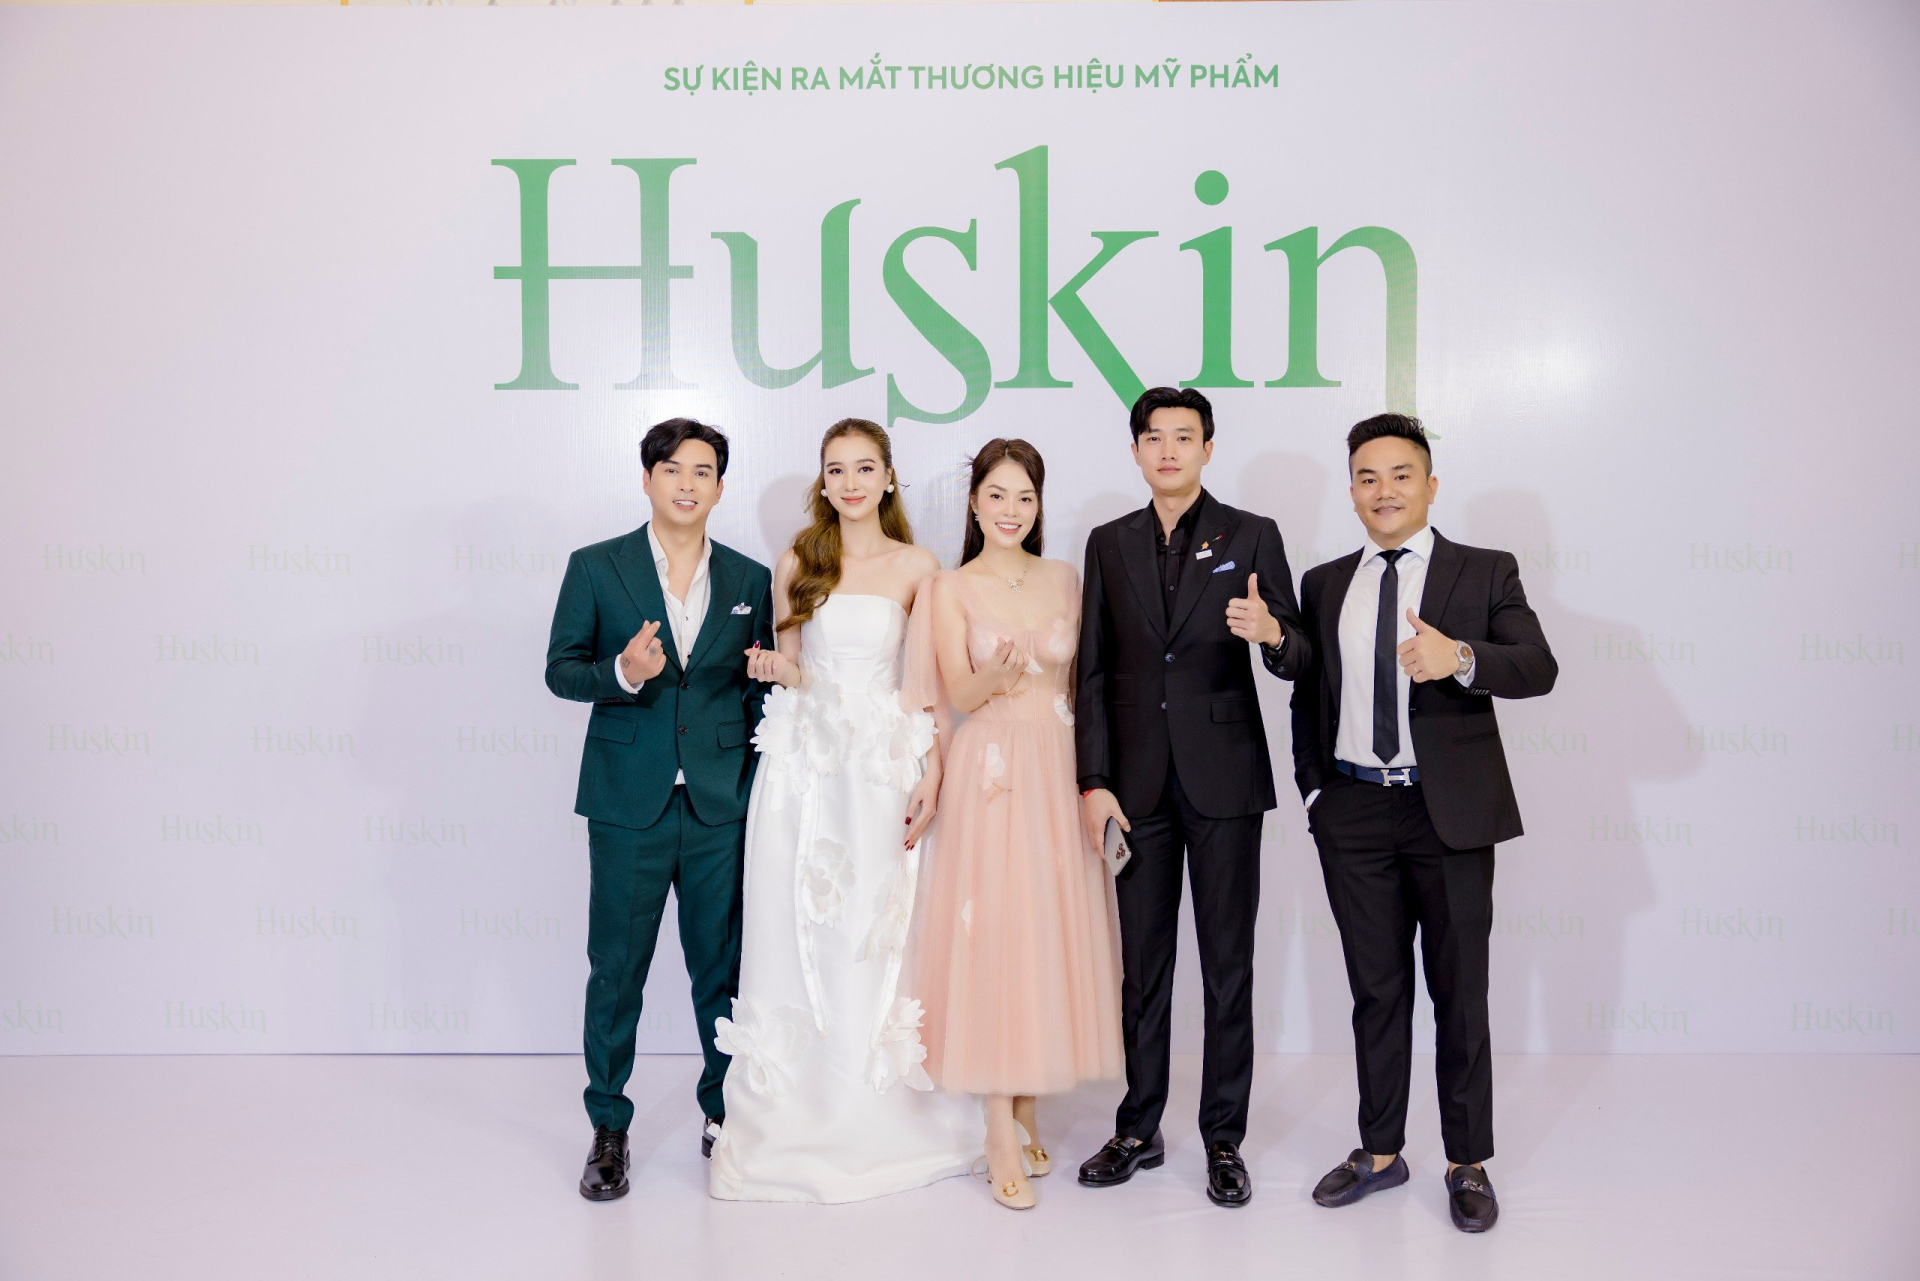 Vợ chồng Hồ Quang Hiếu ra mắt thương hiệu mỹ phẩm Huskin - ảnh 2